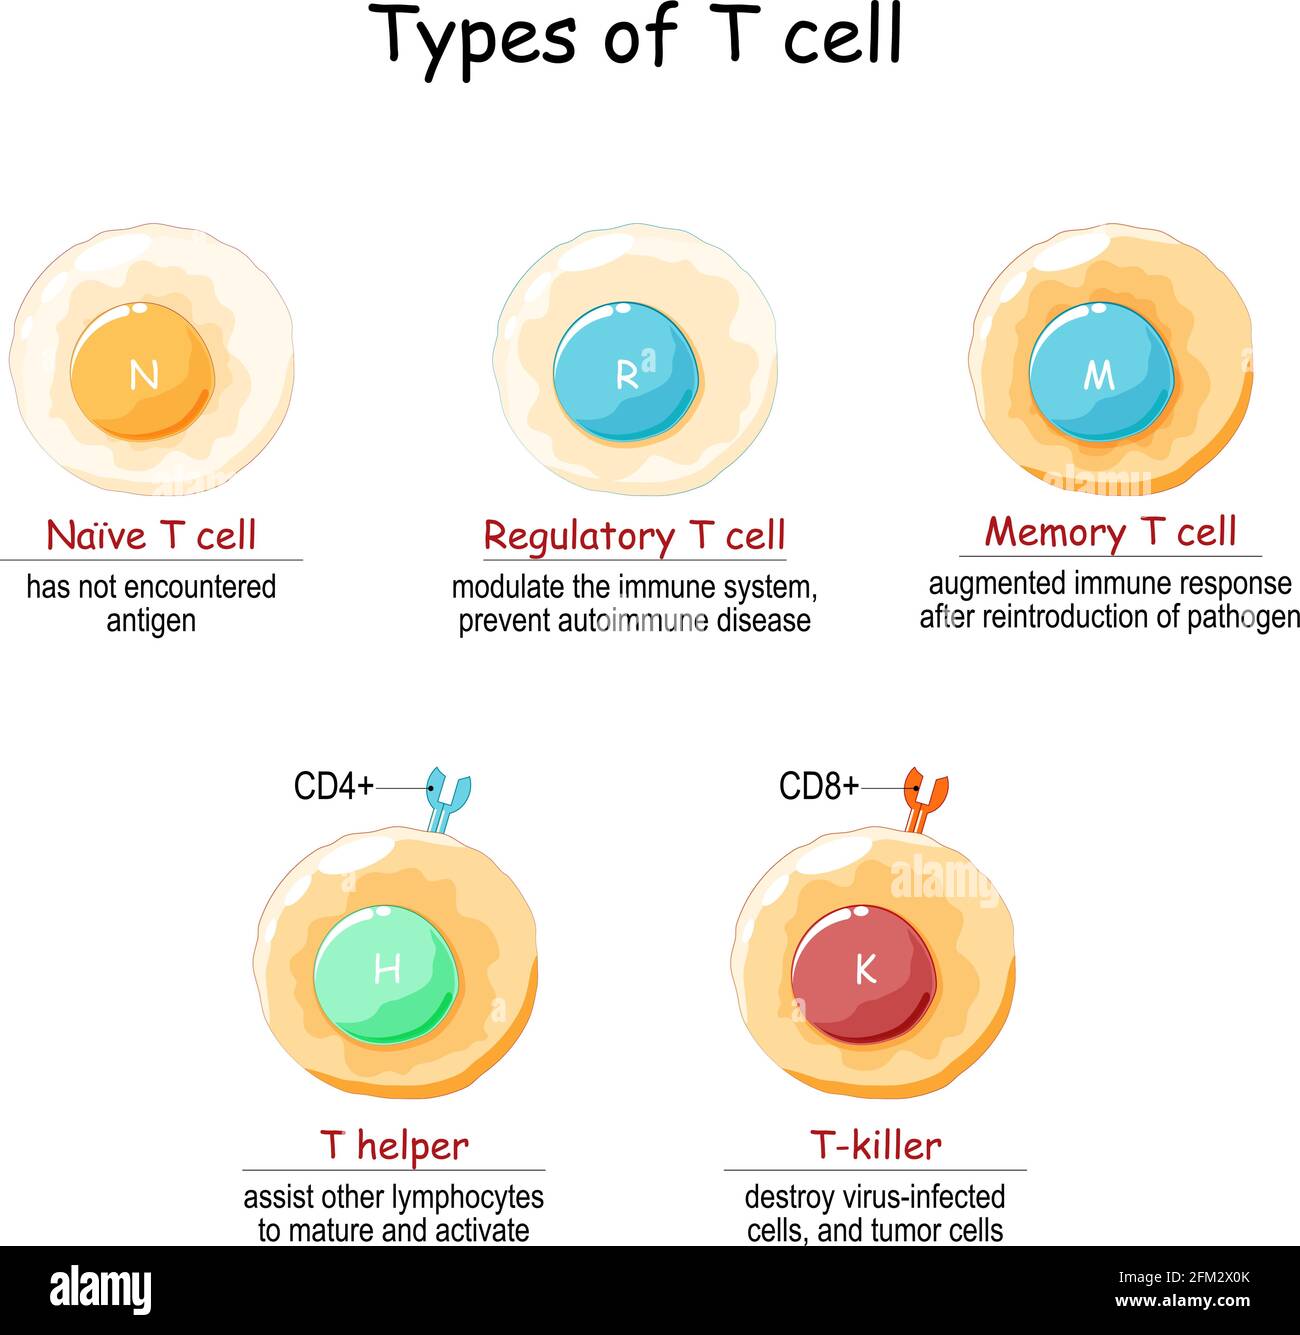 memory b cells cartoon